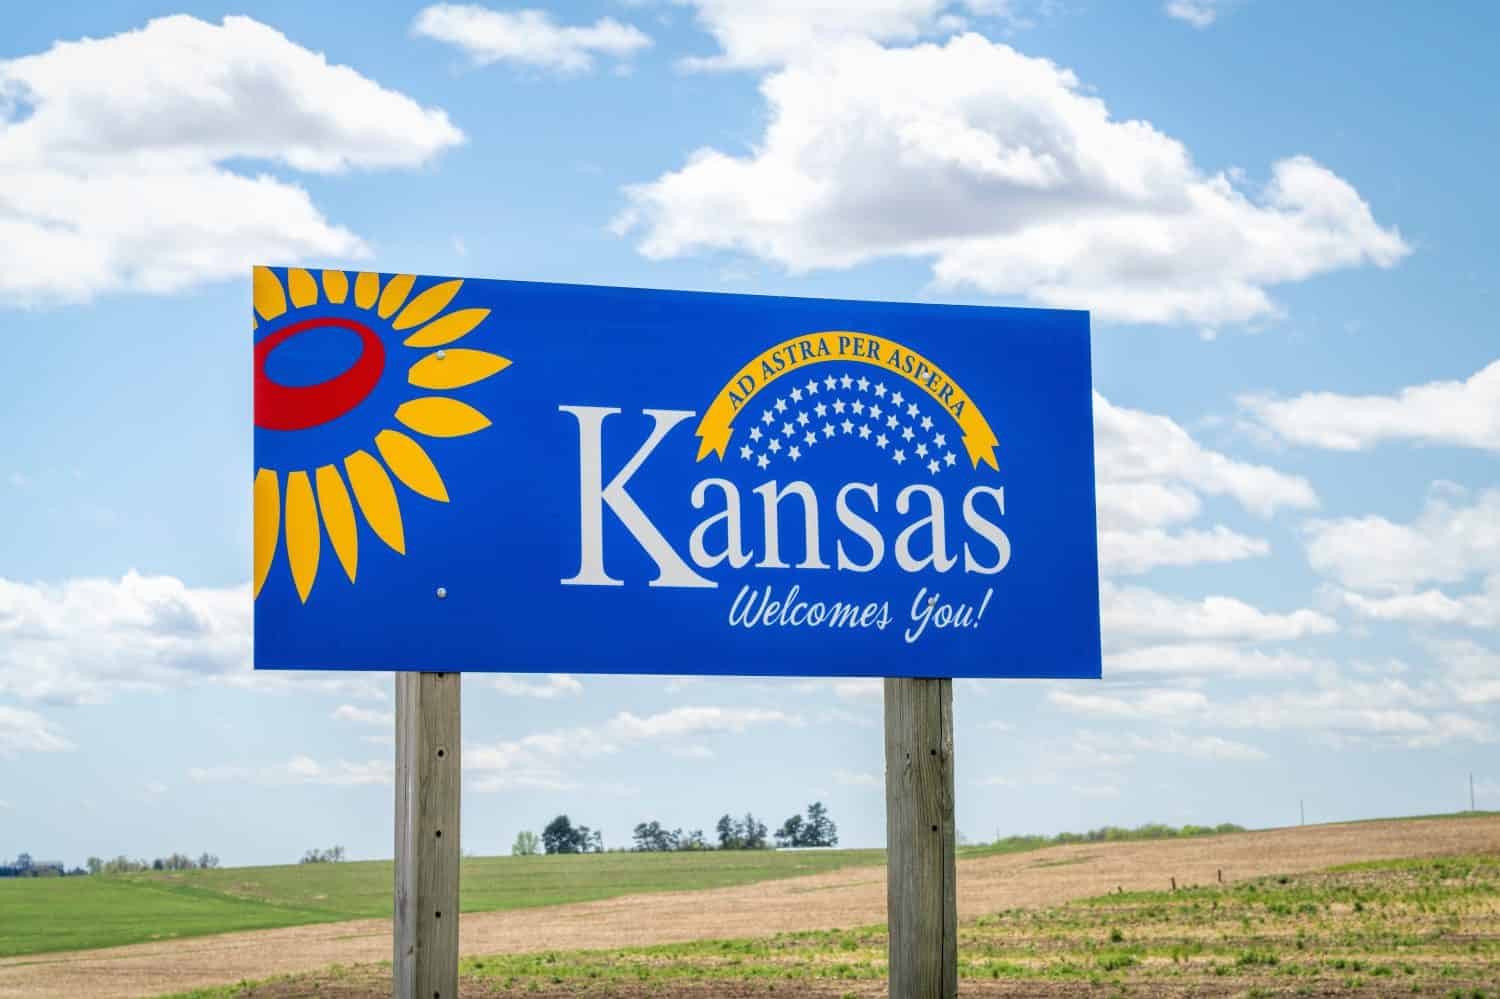 Il Kansas ti dà il benvenuto: cartello stradale di benvenuto con una popolare frase latina ad astra per aspera (attraverso le difficoltà fino alle stelle), concetto di guida e di viaggio